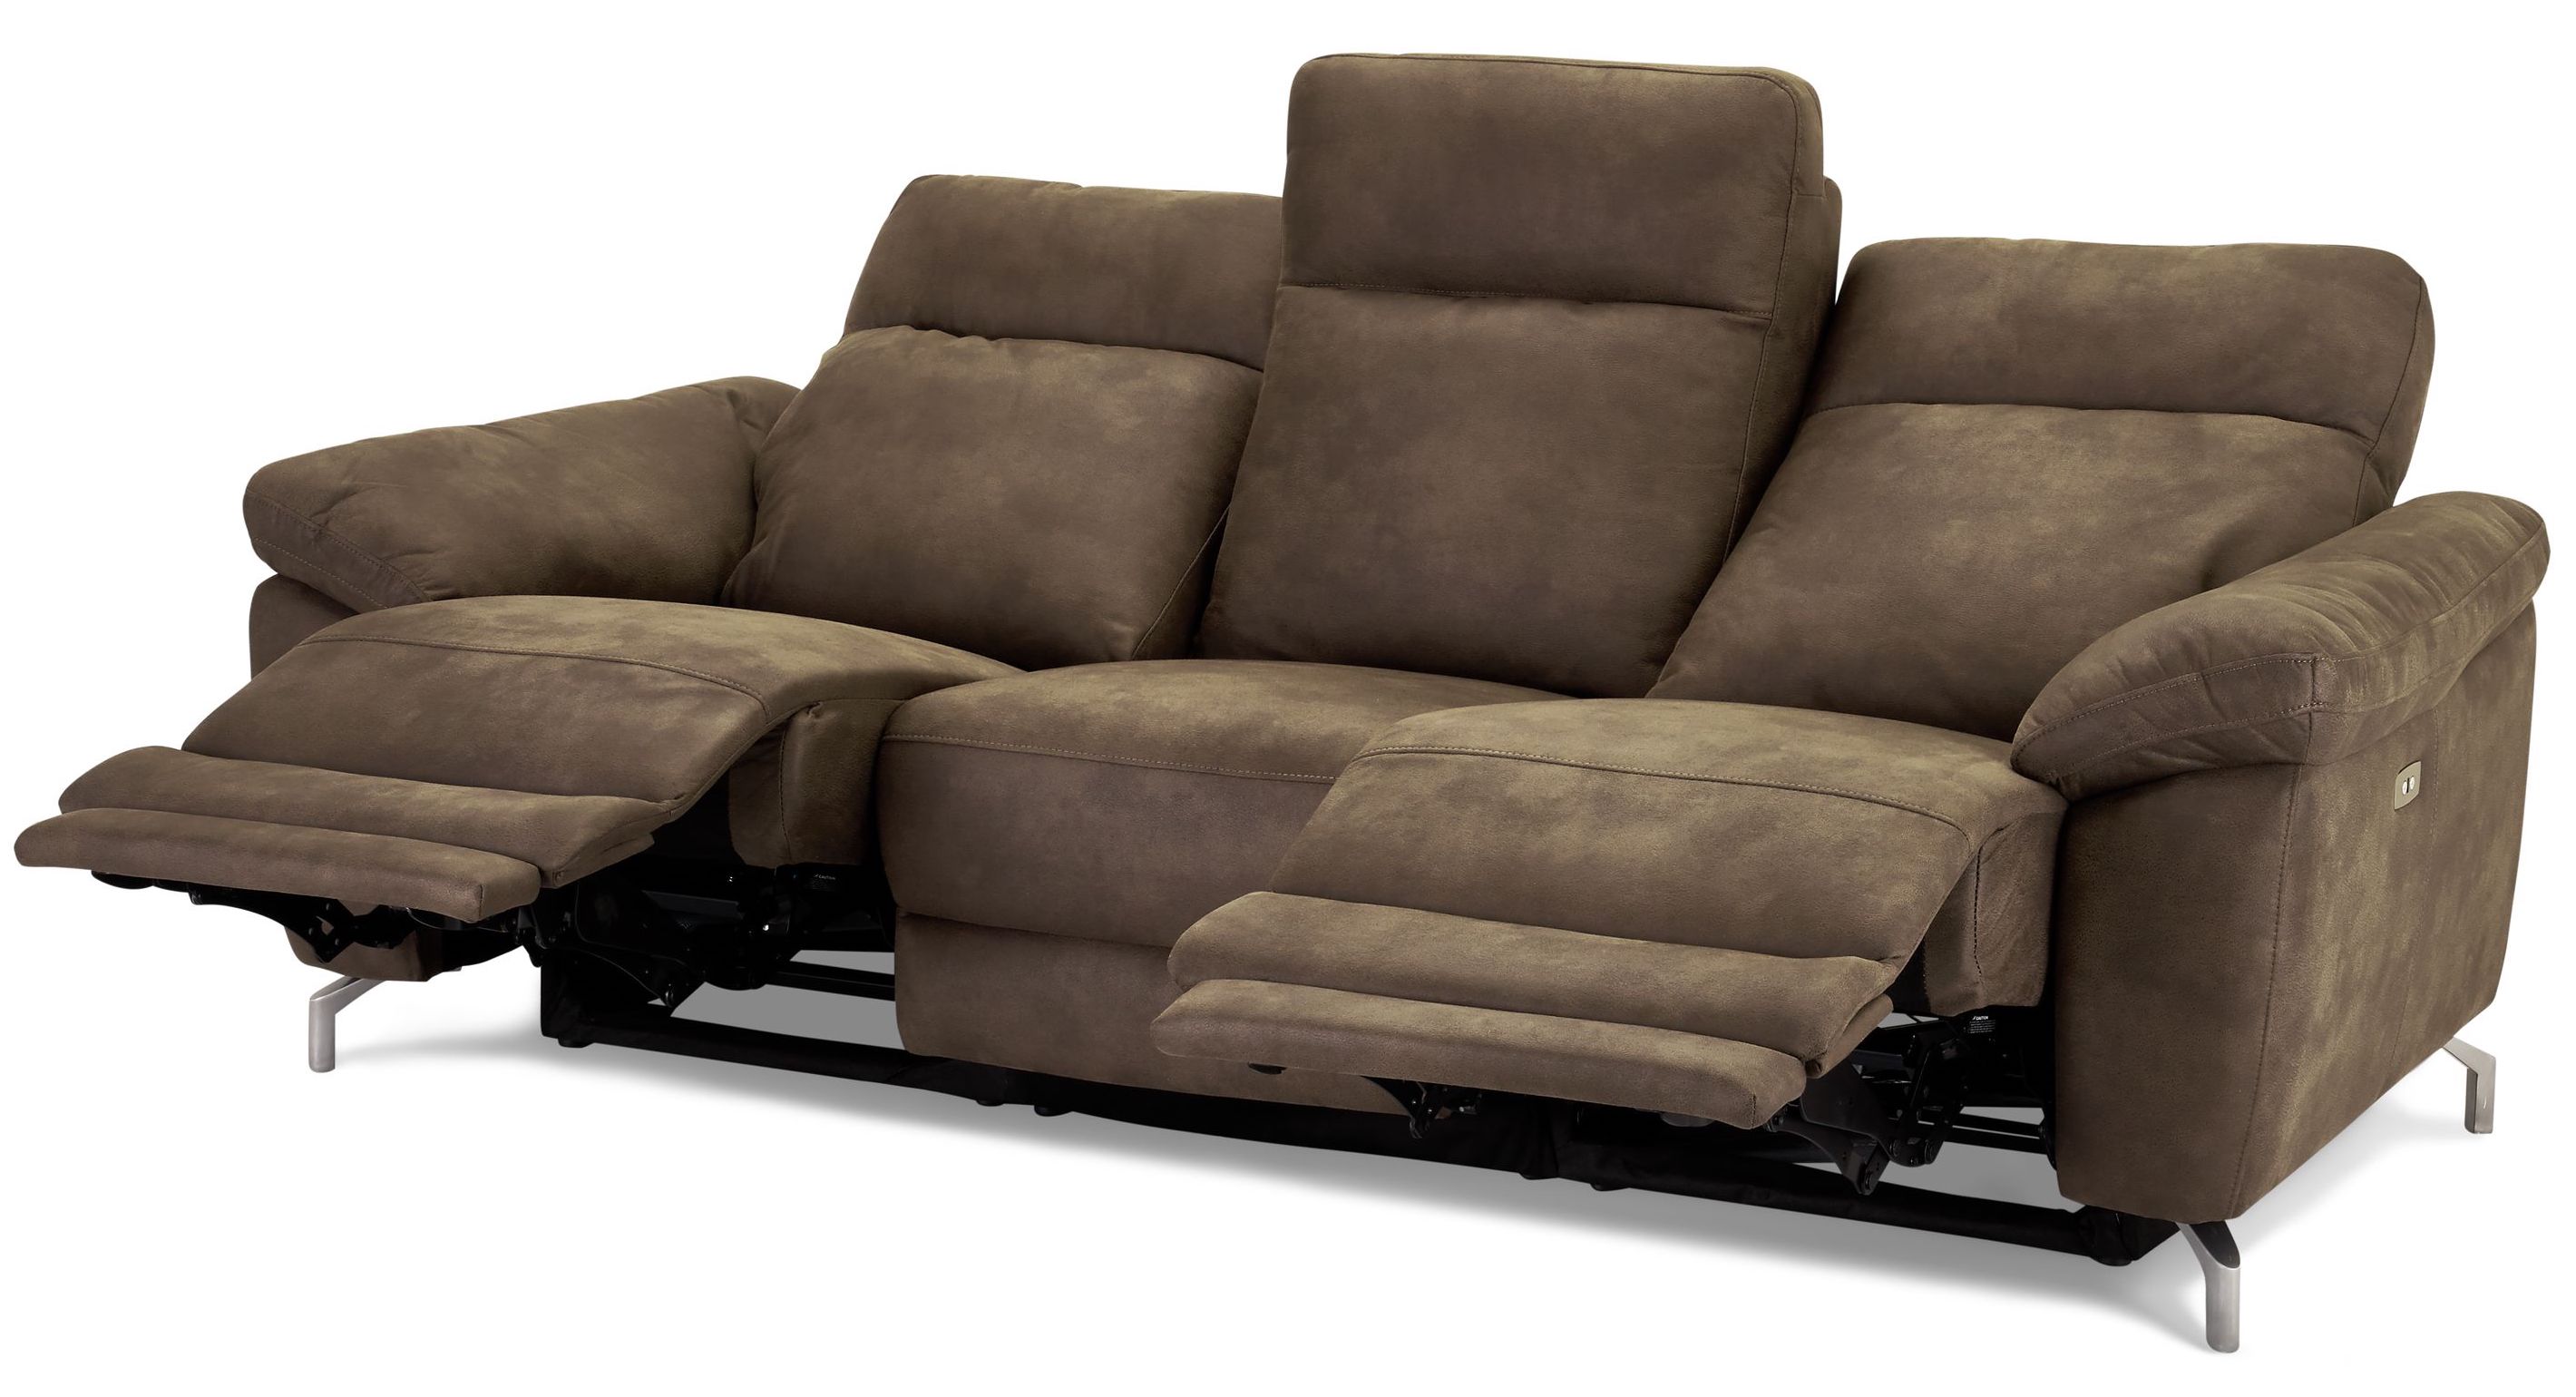 Selma 3 personers sofa med elevations sæder til nakke, ryg og ben i grå microfiber